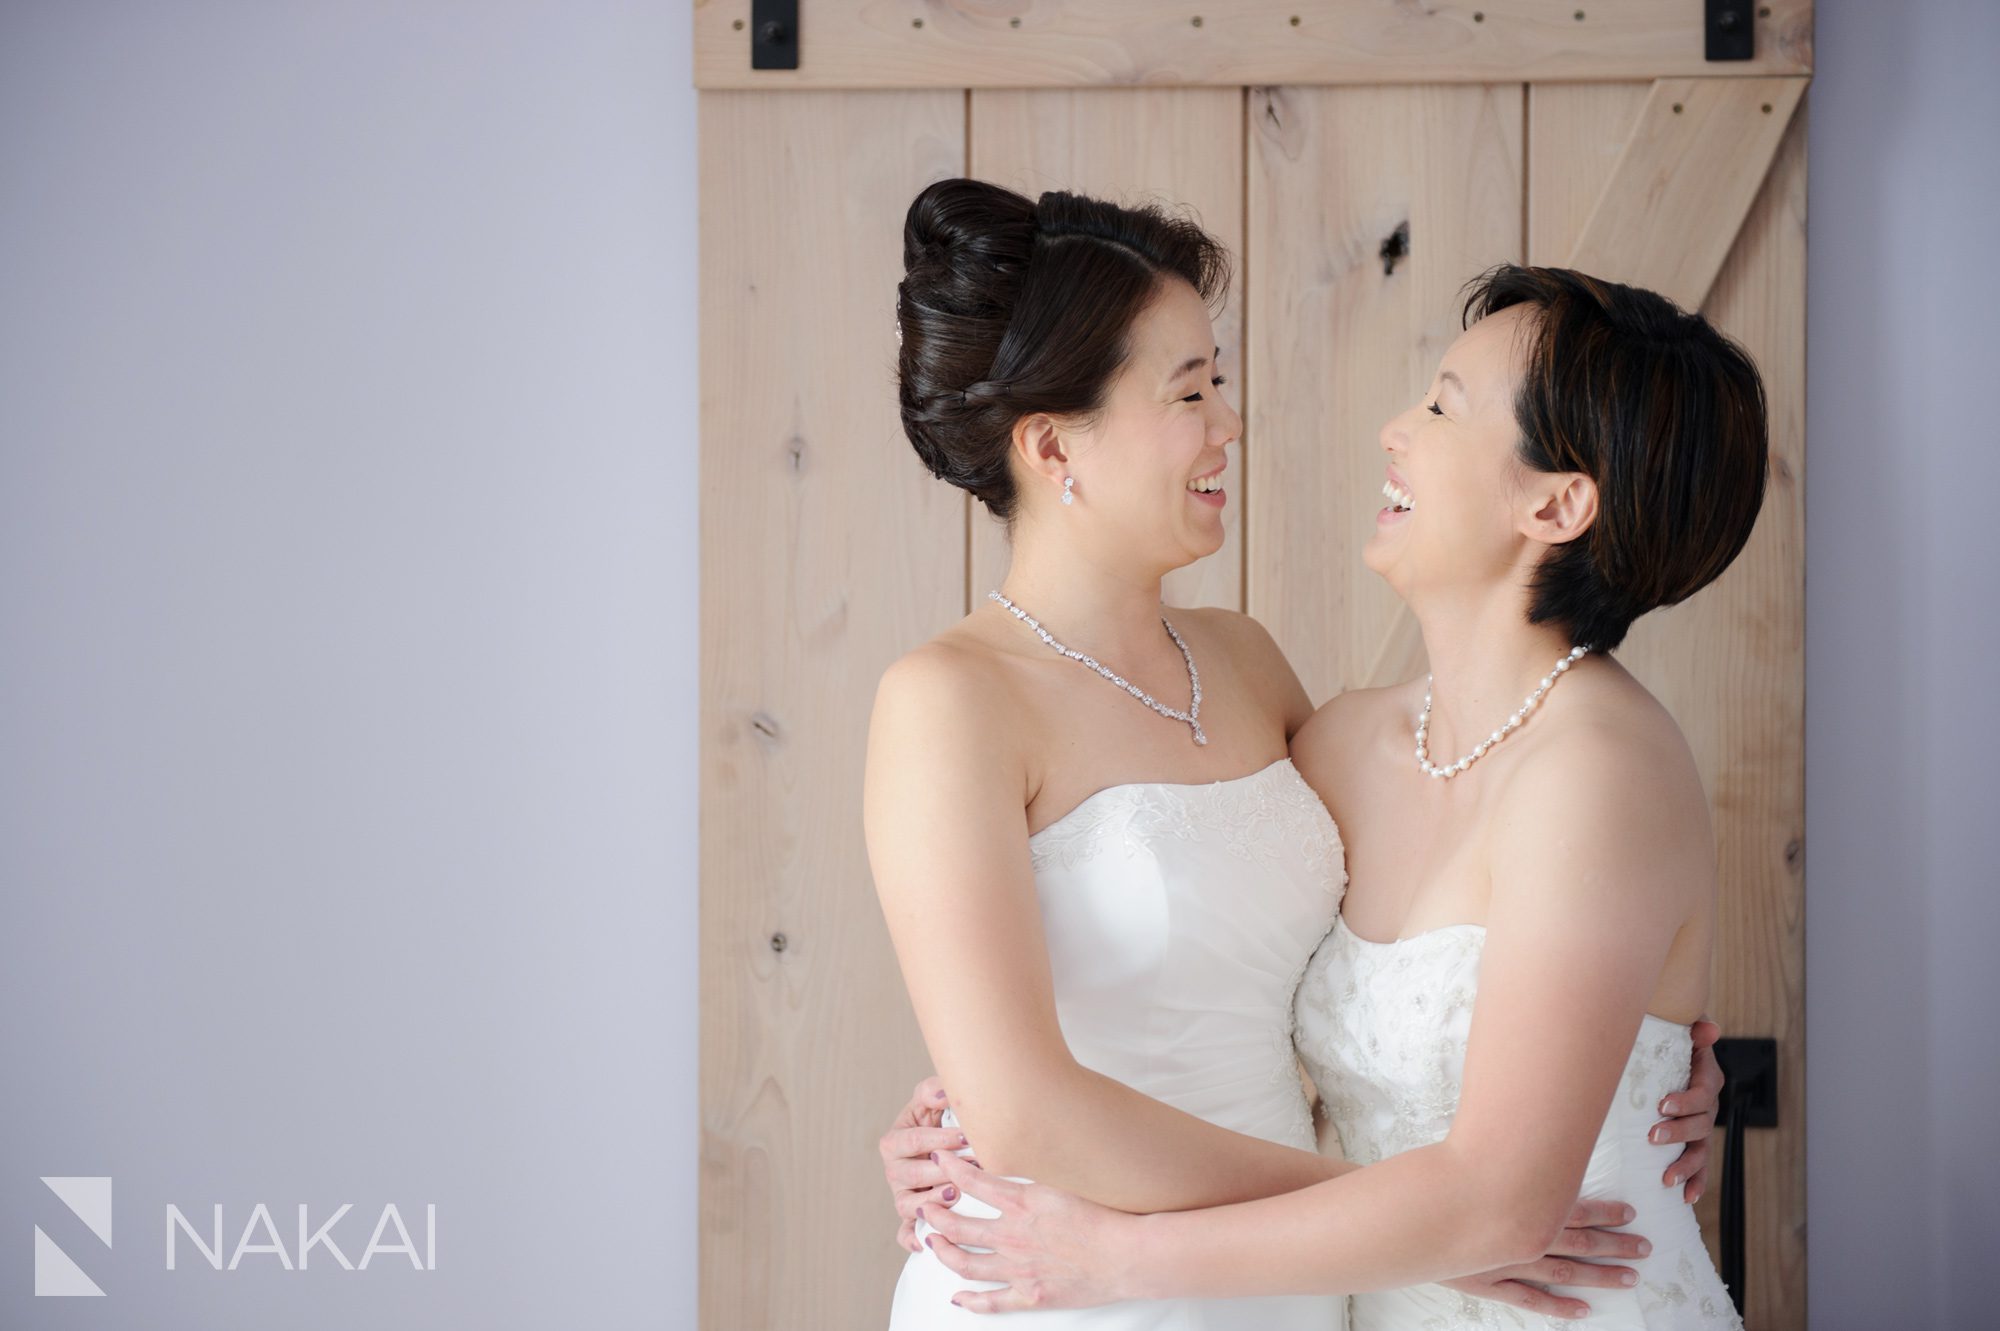 chicago-lesbian-wedding-photographer-nakai-photography-011